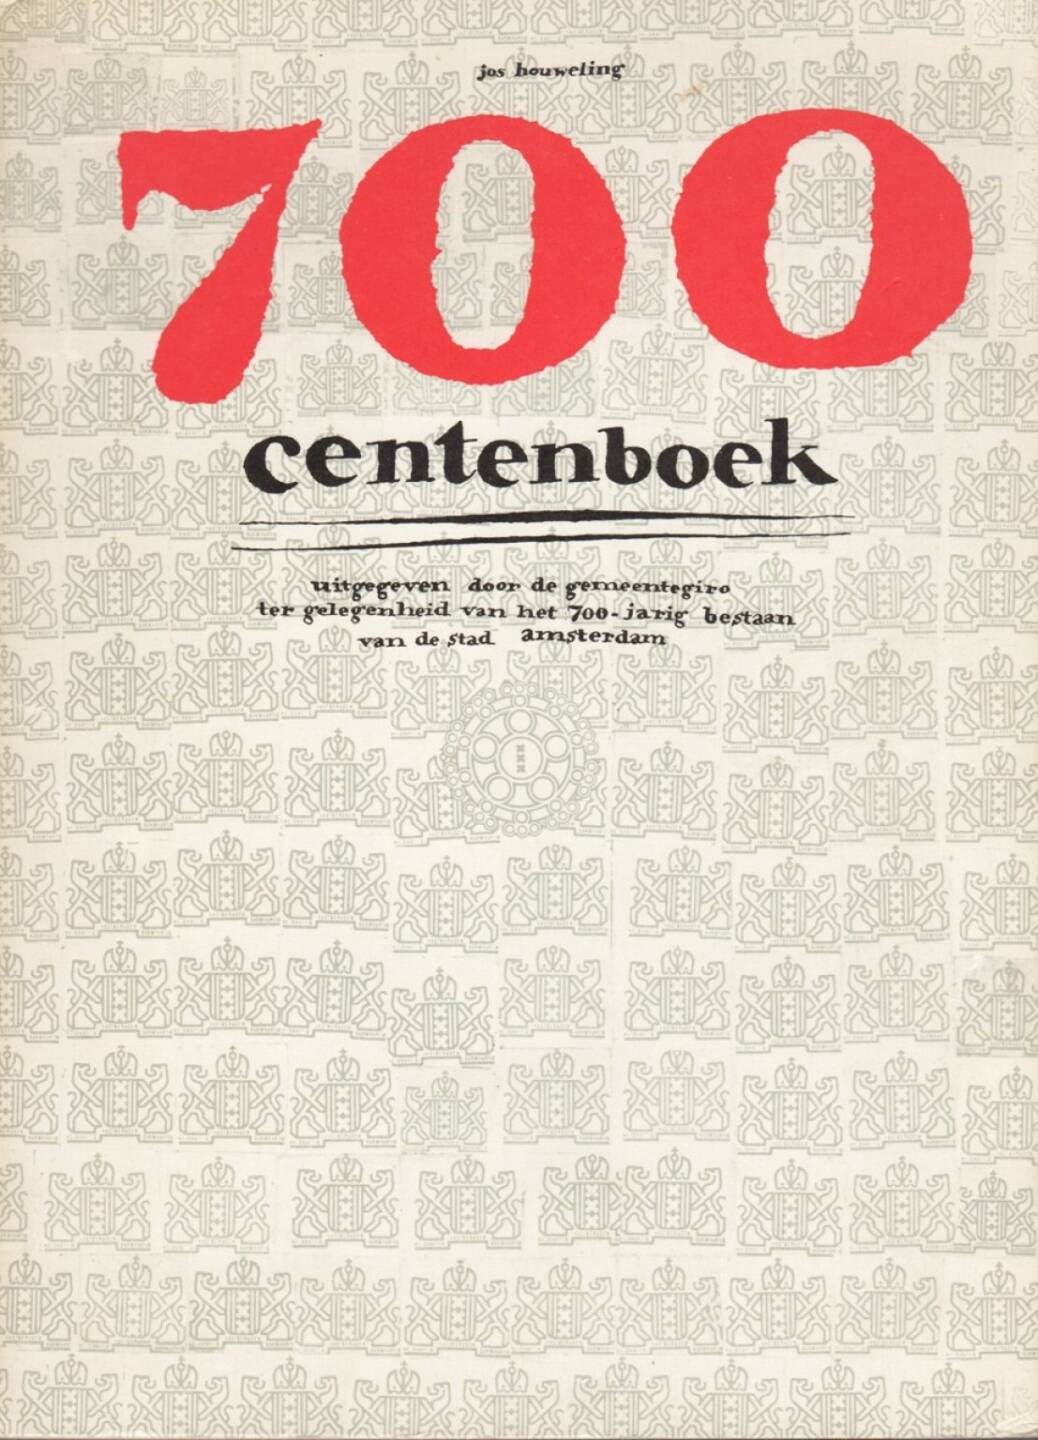 Jos Houweling - 700 centenboek, Gemeentegiro, 1975, Cover, http://josefchladek.com/book/jos_houweling_-_700_centenboek_uitgegeven_door_de_gemeentegiro_ter_gelegenheid_van_het_700